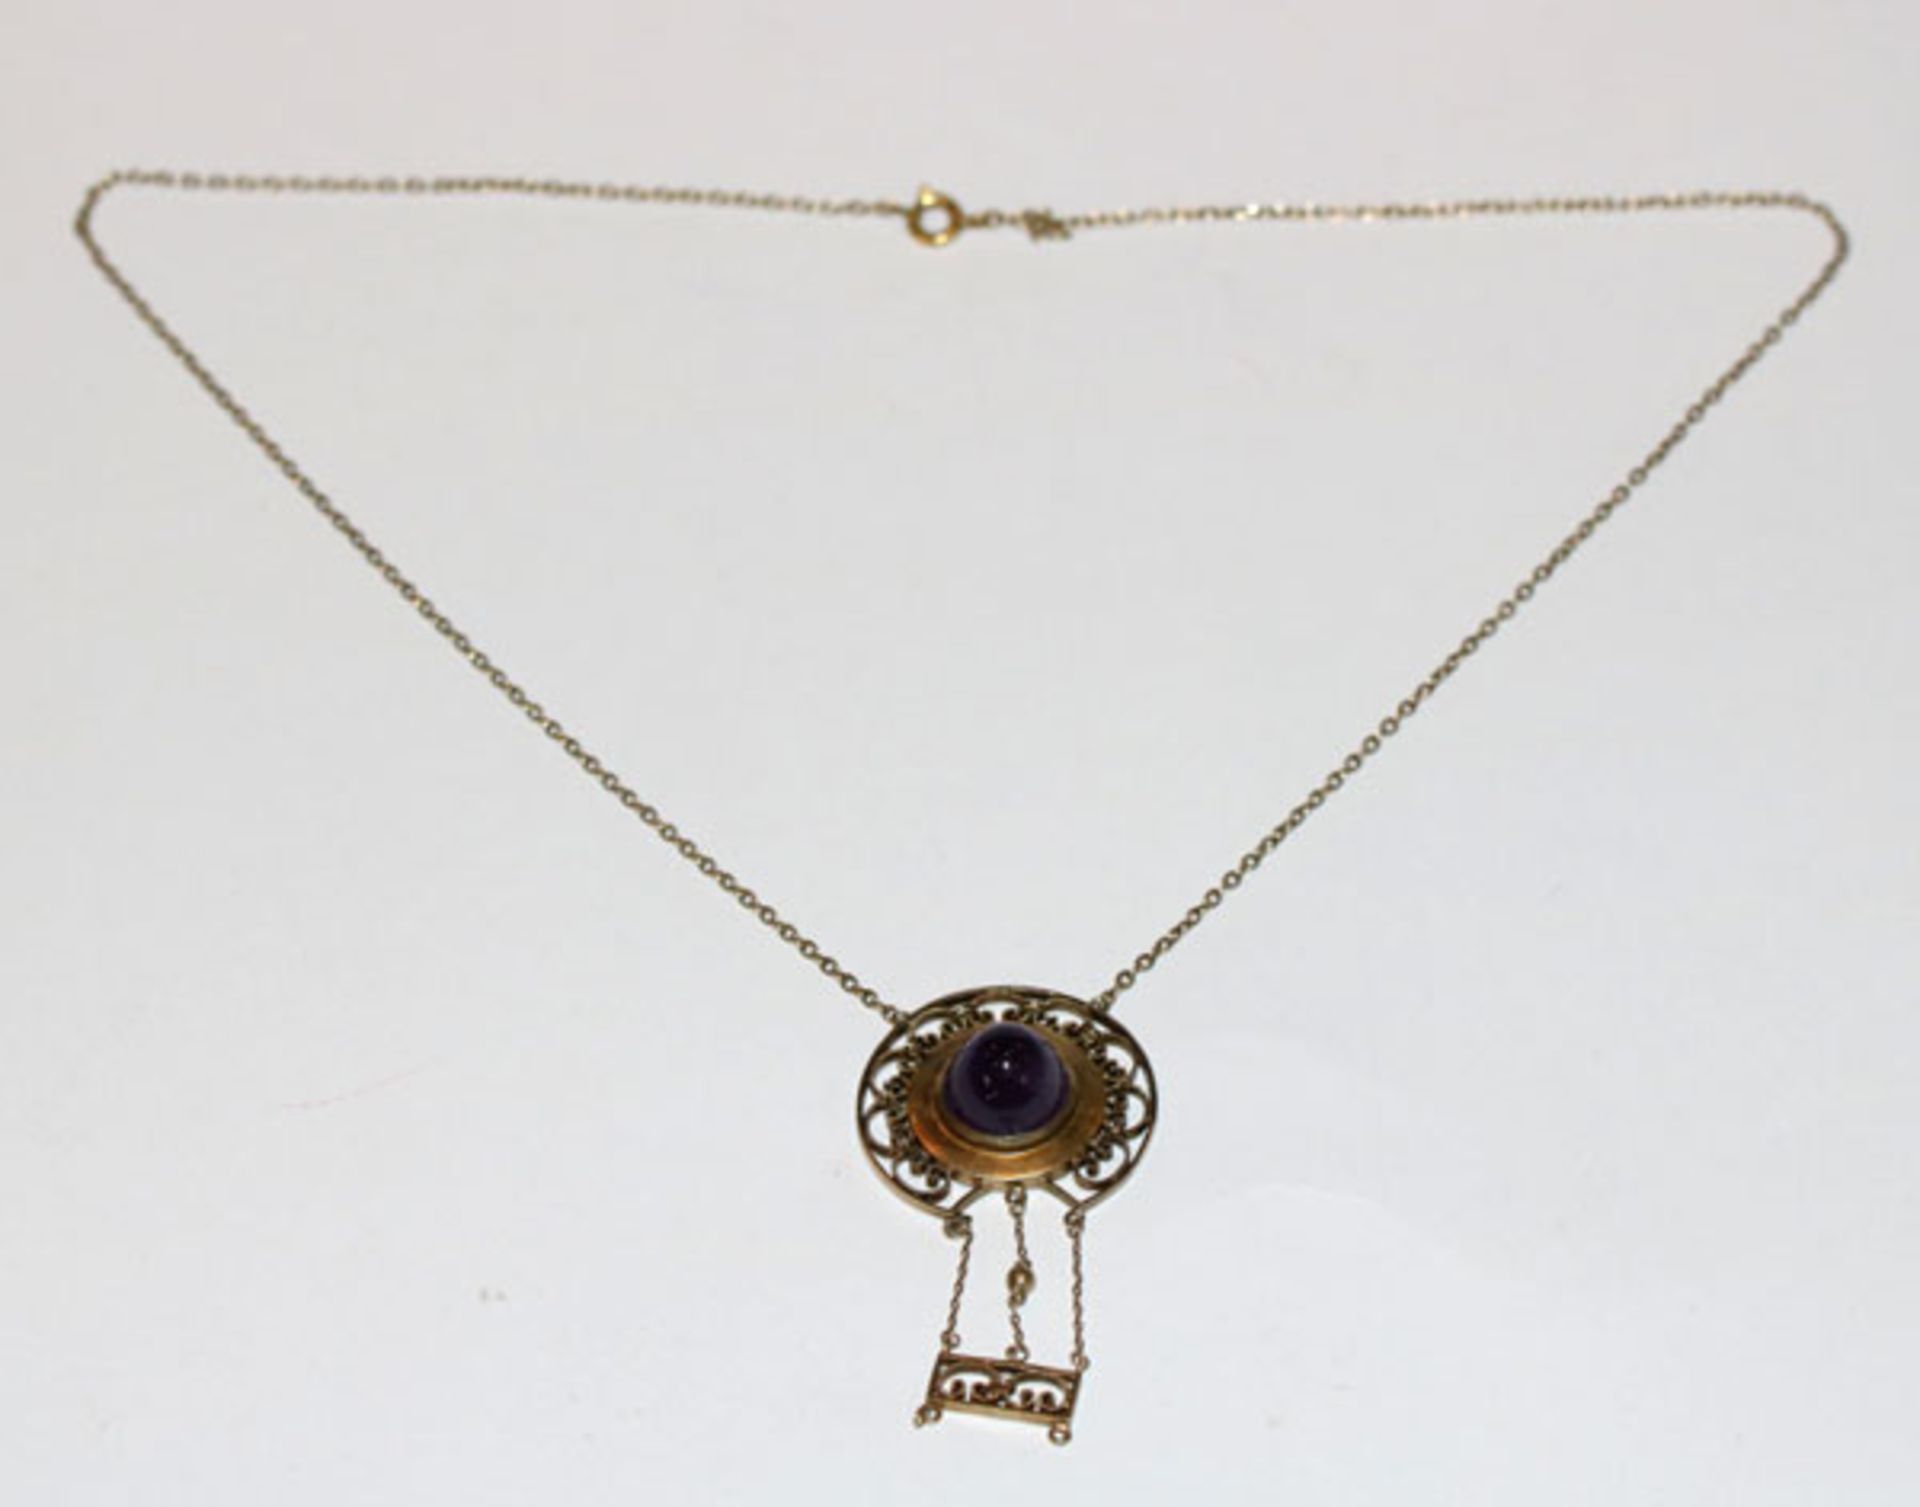 Silber/vergoldetes Collier mit Amethyst, nicht komplett, um 1910, L 44 cm